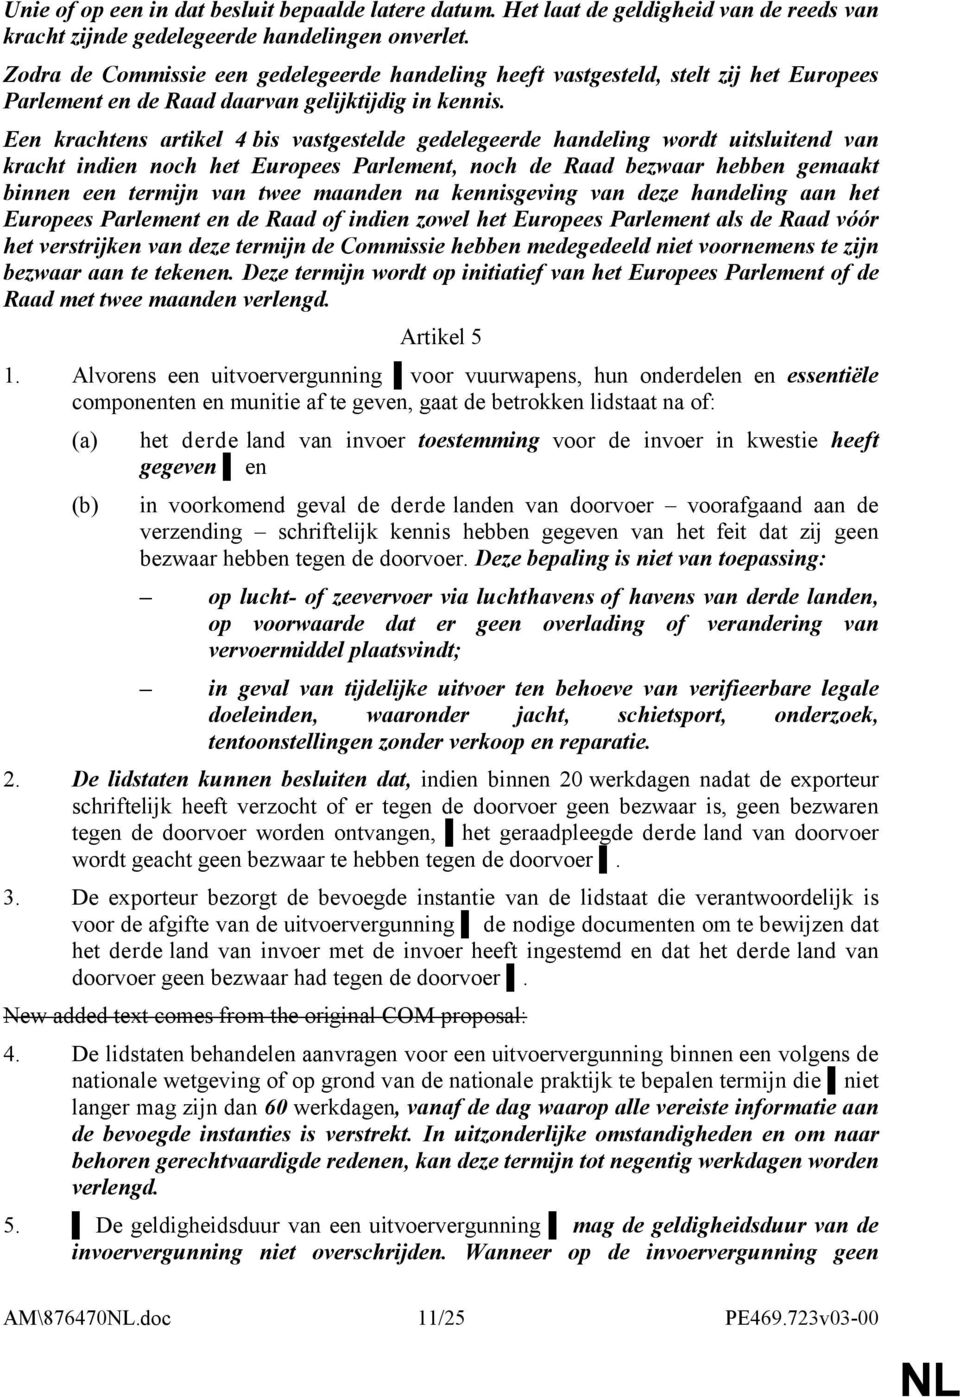 Een krachtens artikel 4 bis vastgestelde gedelegeerde handeling wordt uitsluitend van kracht indien noch het Europees Parlement, noch de Raad bezwaar hebben gemaakt binnen een termijn van twee